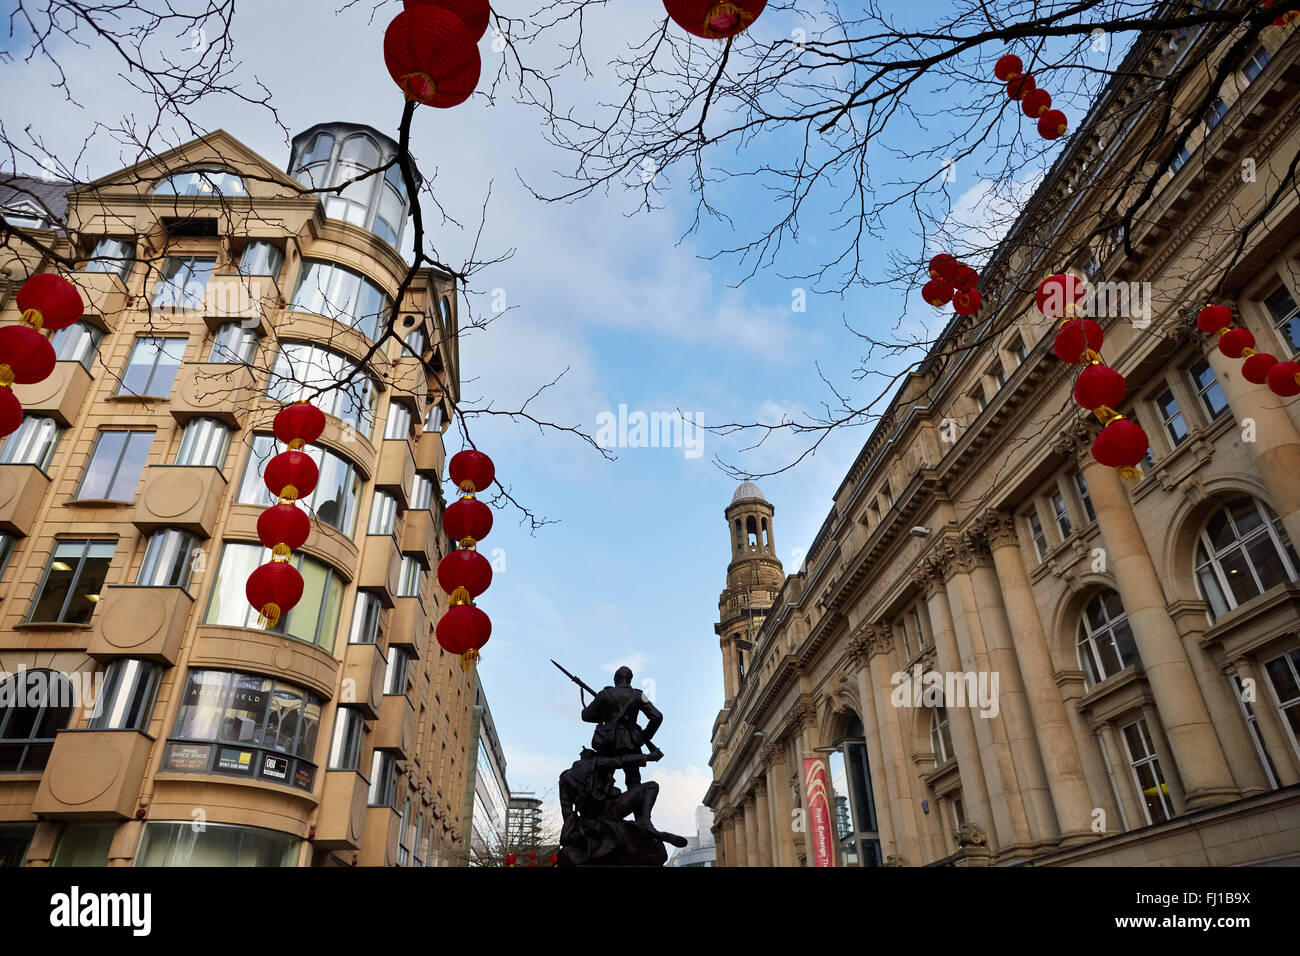 Manchester-St Anns Square Saint chinesische Papier Laterne rot hängen Sand Steinbauten Exemplar GB UK Großbritannien Briti Stockfoto